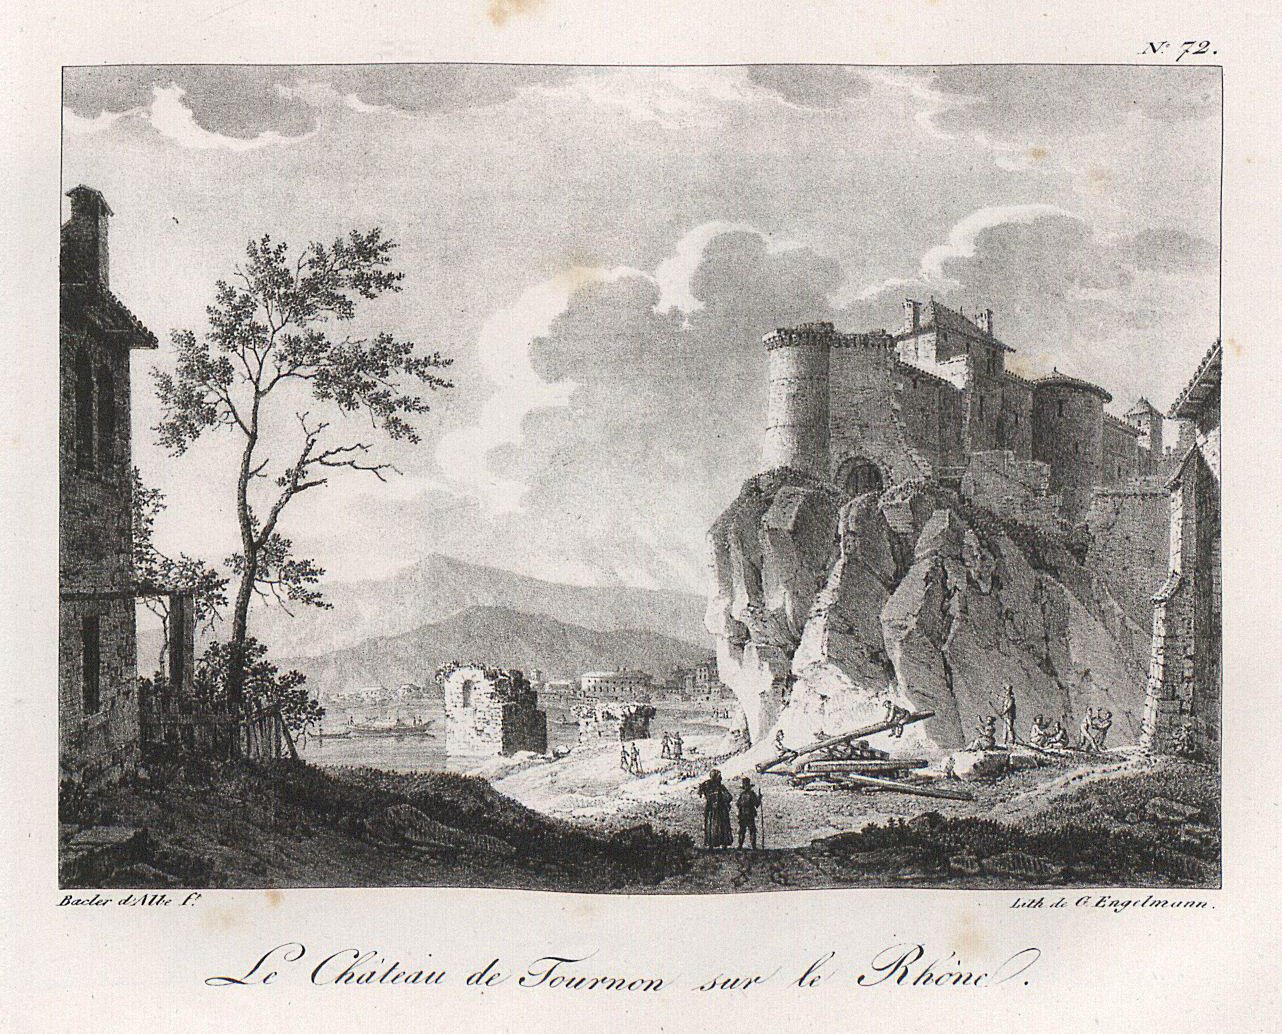 Le Château de Tournon sur le Rhône.